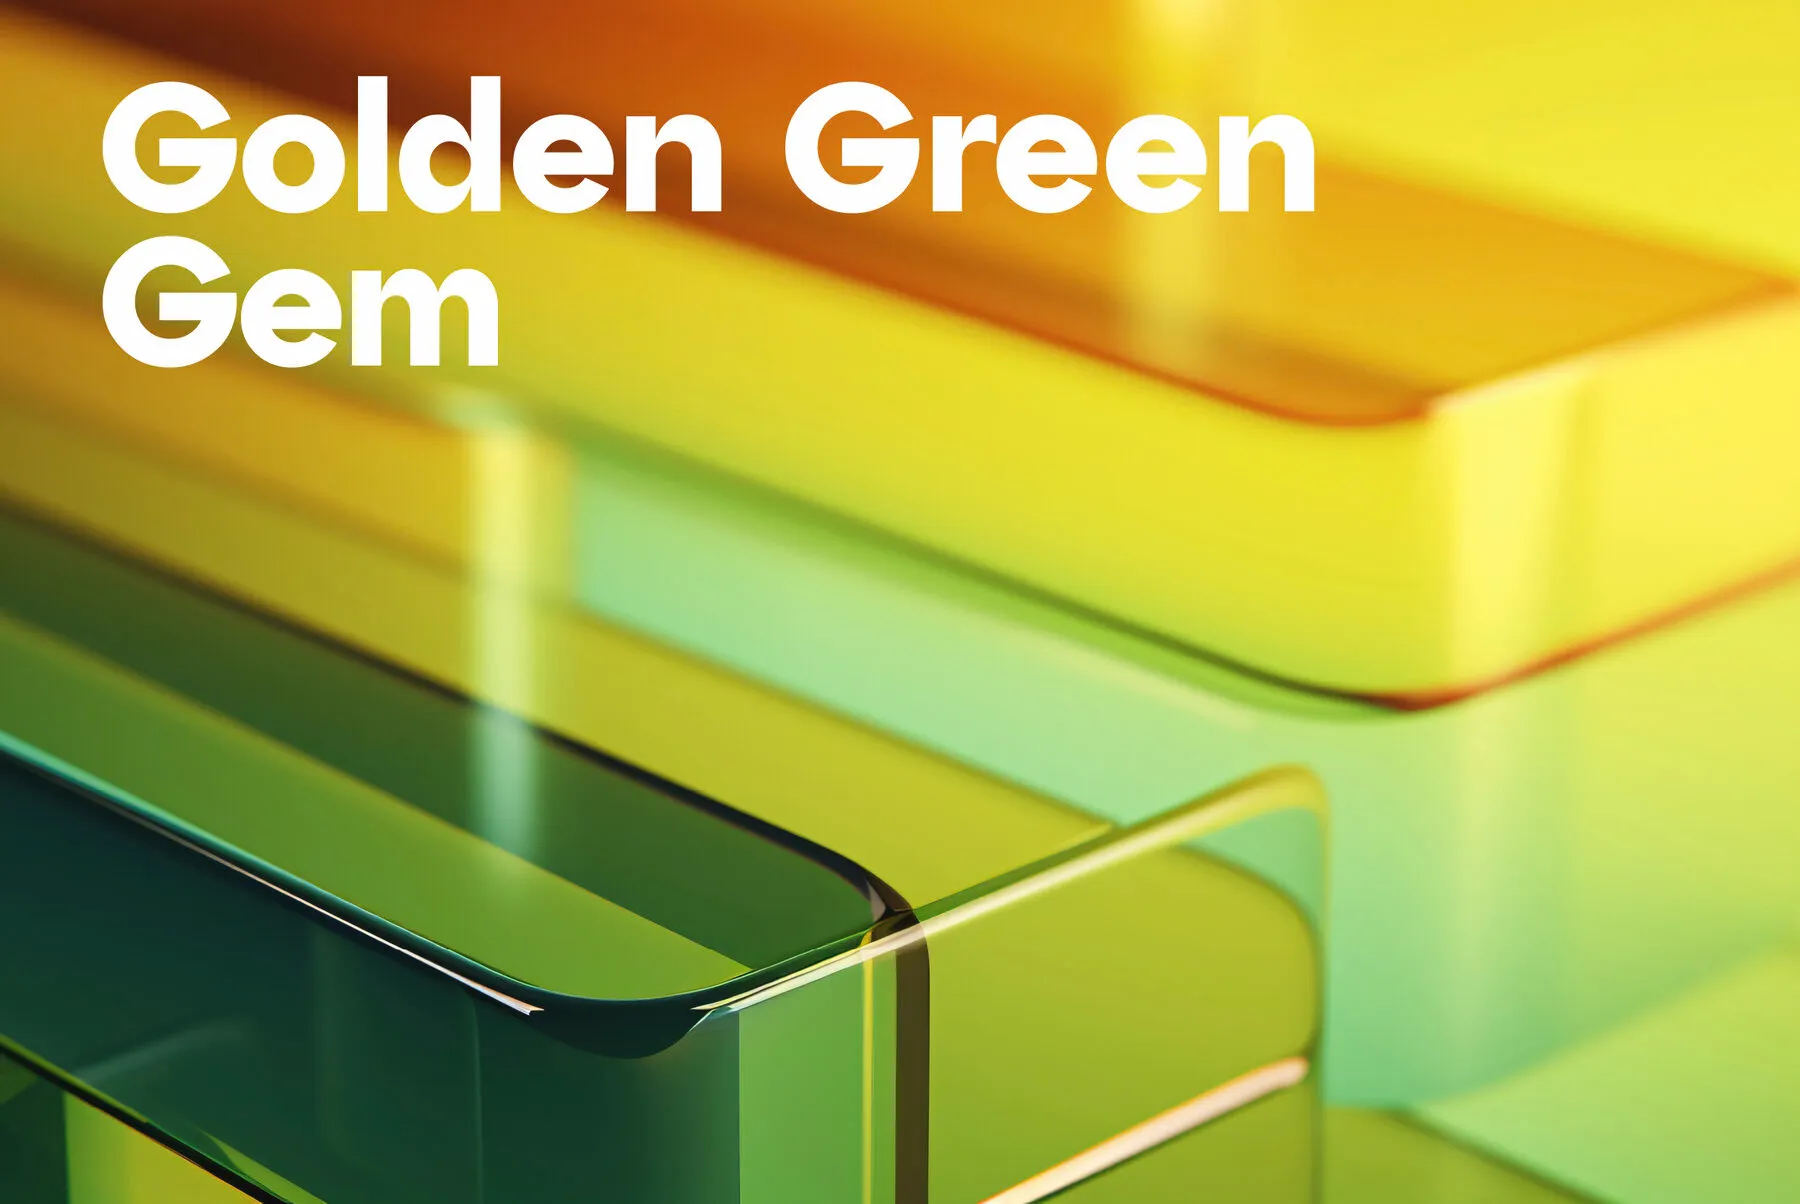 Golden Green Gem